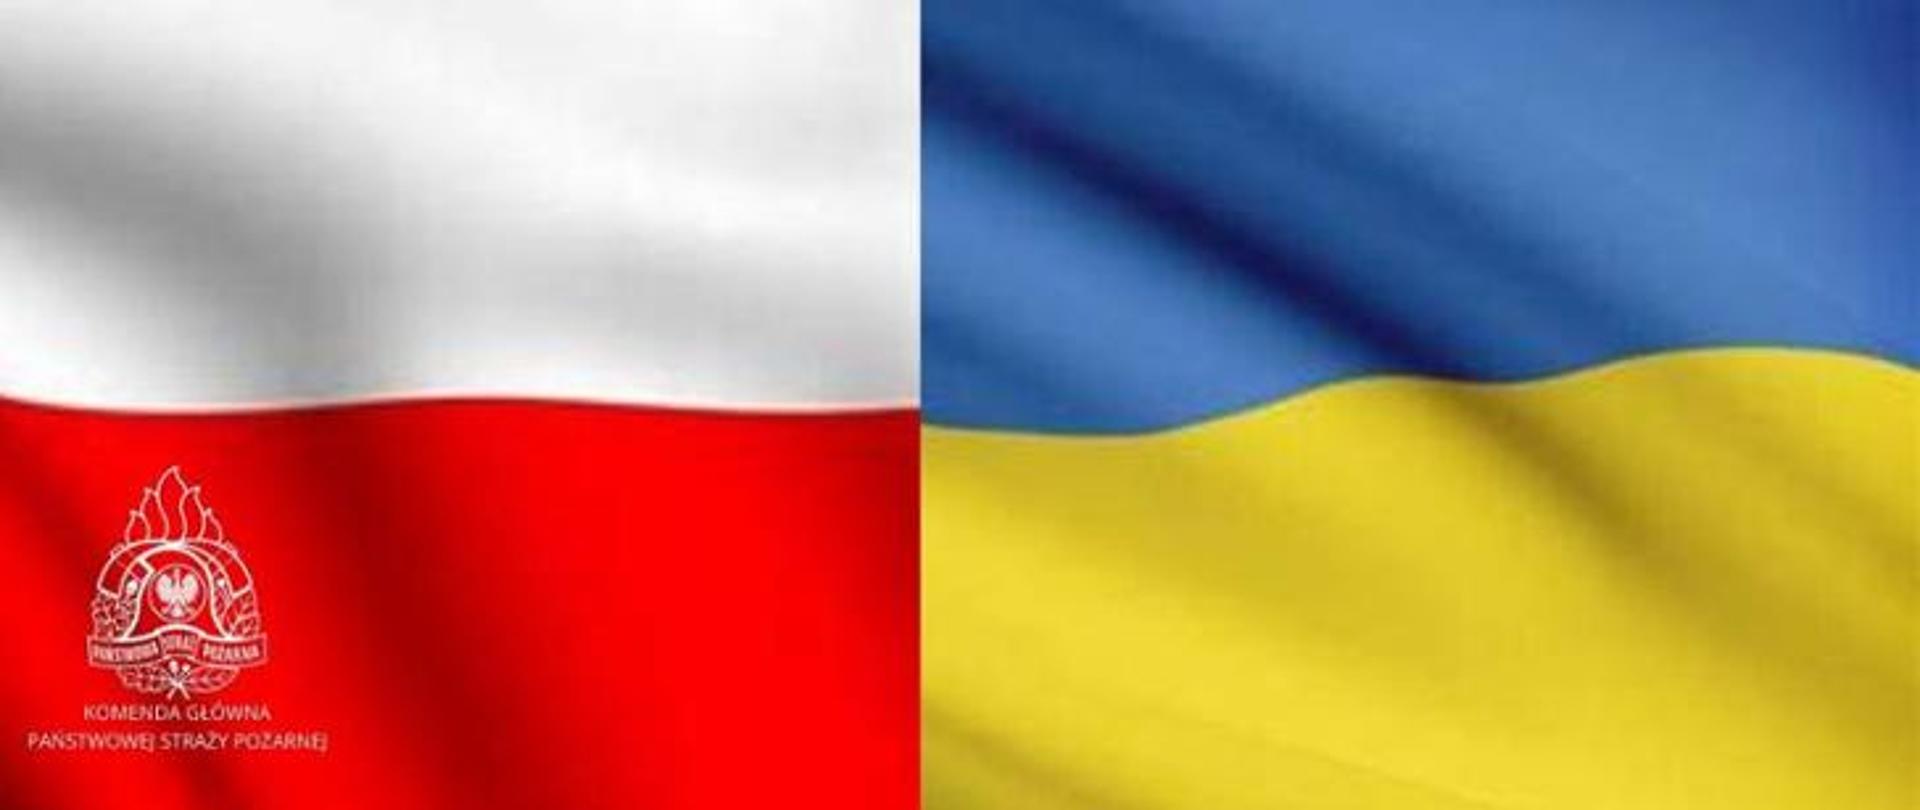 Na zdjęciu znajdują się połączone dwie flagi Polski i Ukrainy